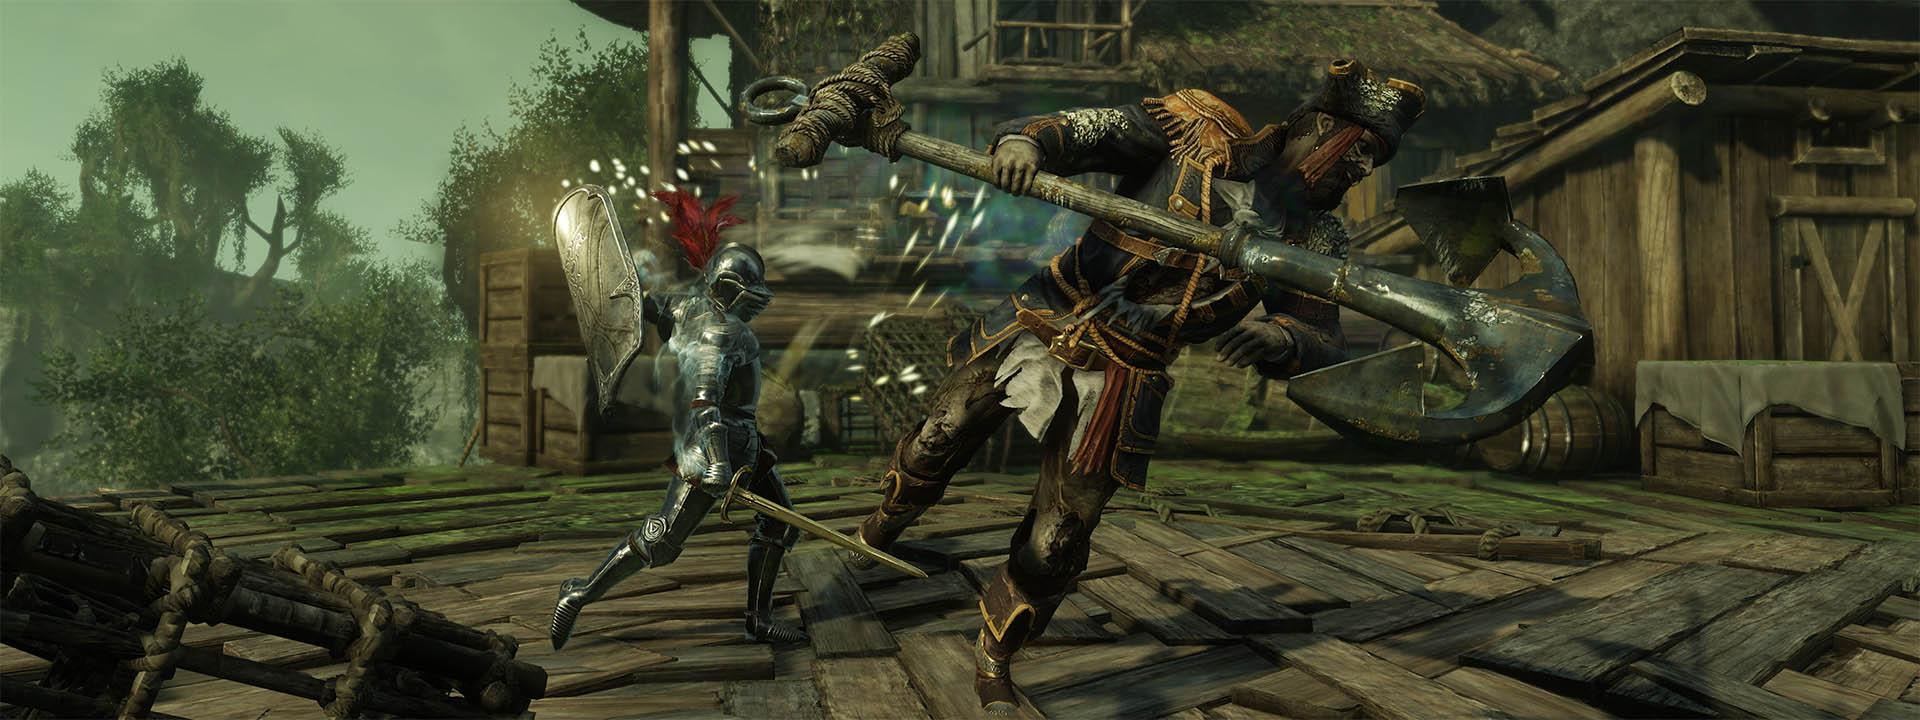 Zrzut ekranu z walczącą postacią dzierżącą nową pawęż.